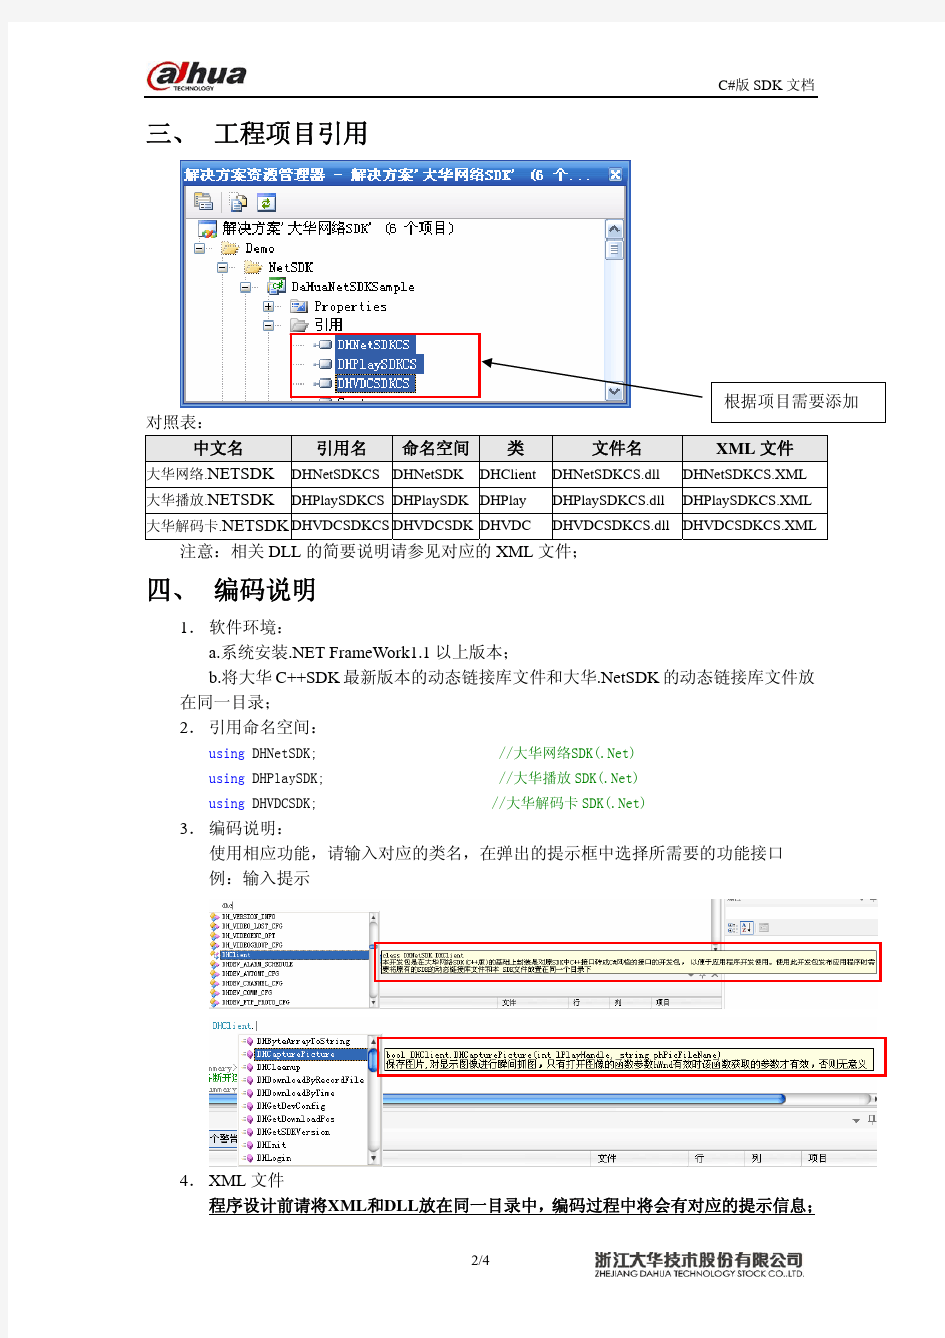 大华.NETSDK及例程说明